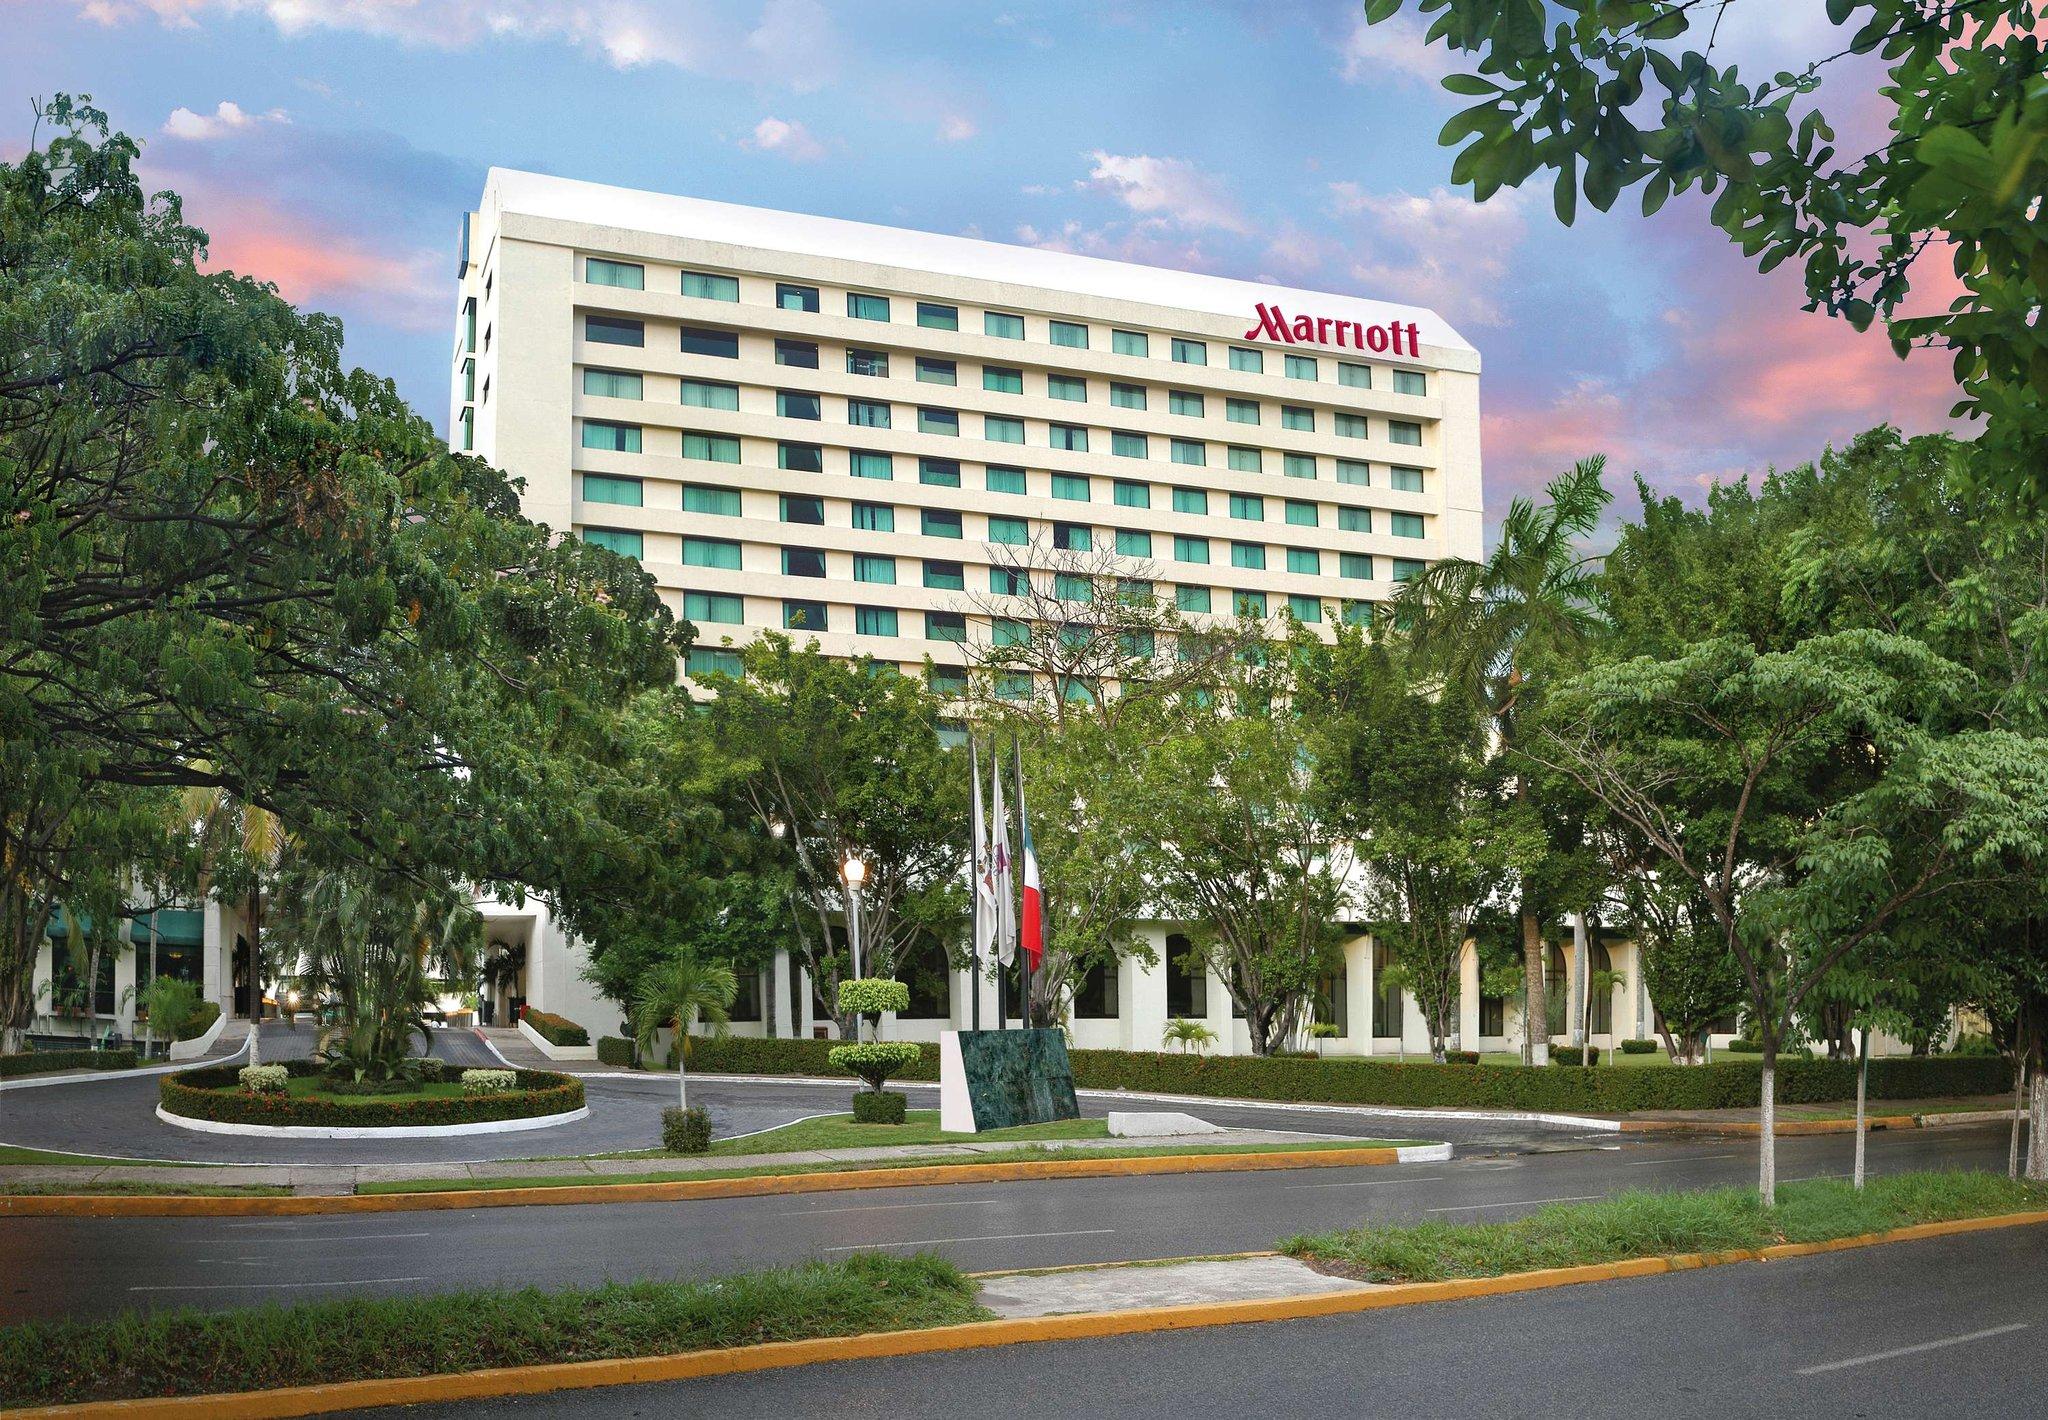 Villahermosa Marriott Hotel image 1